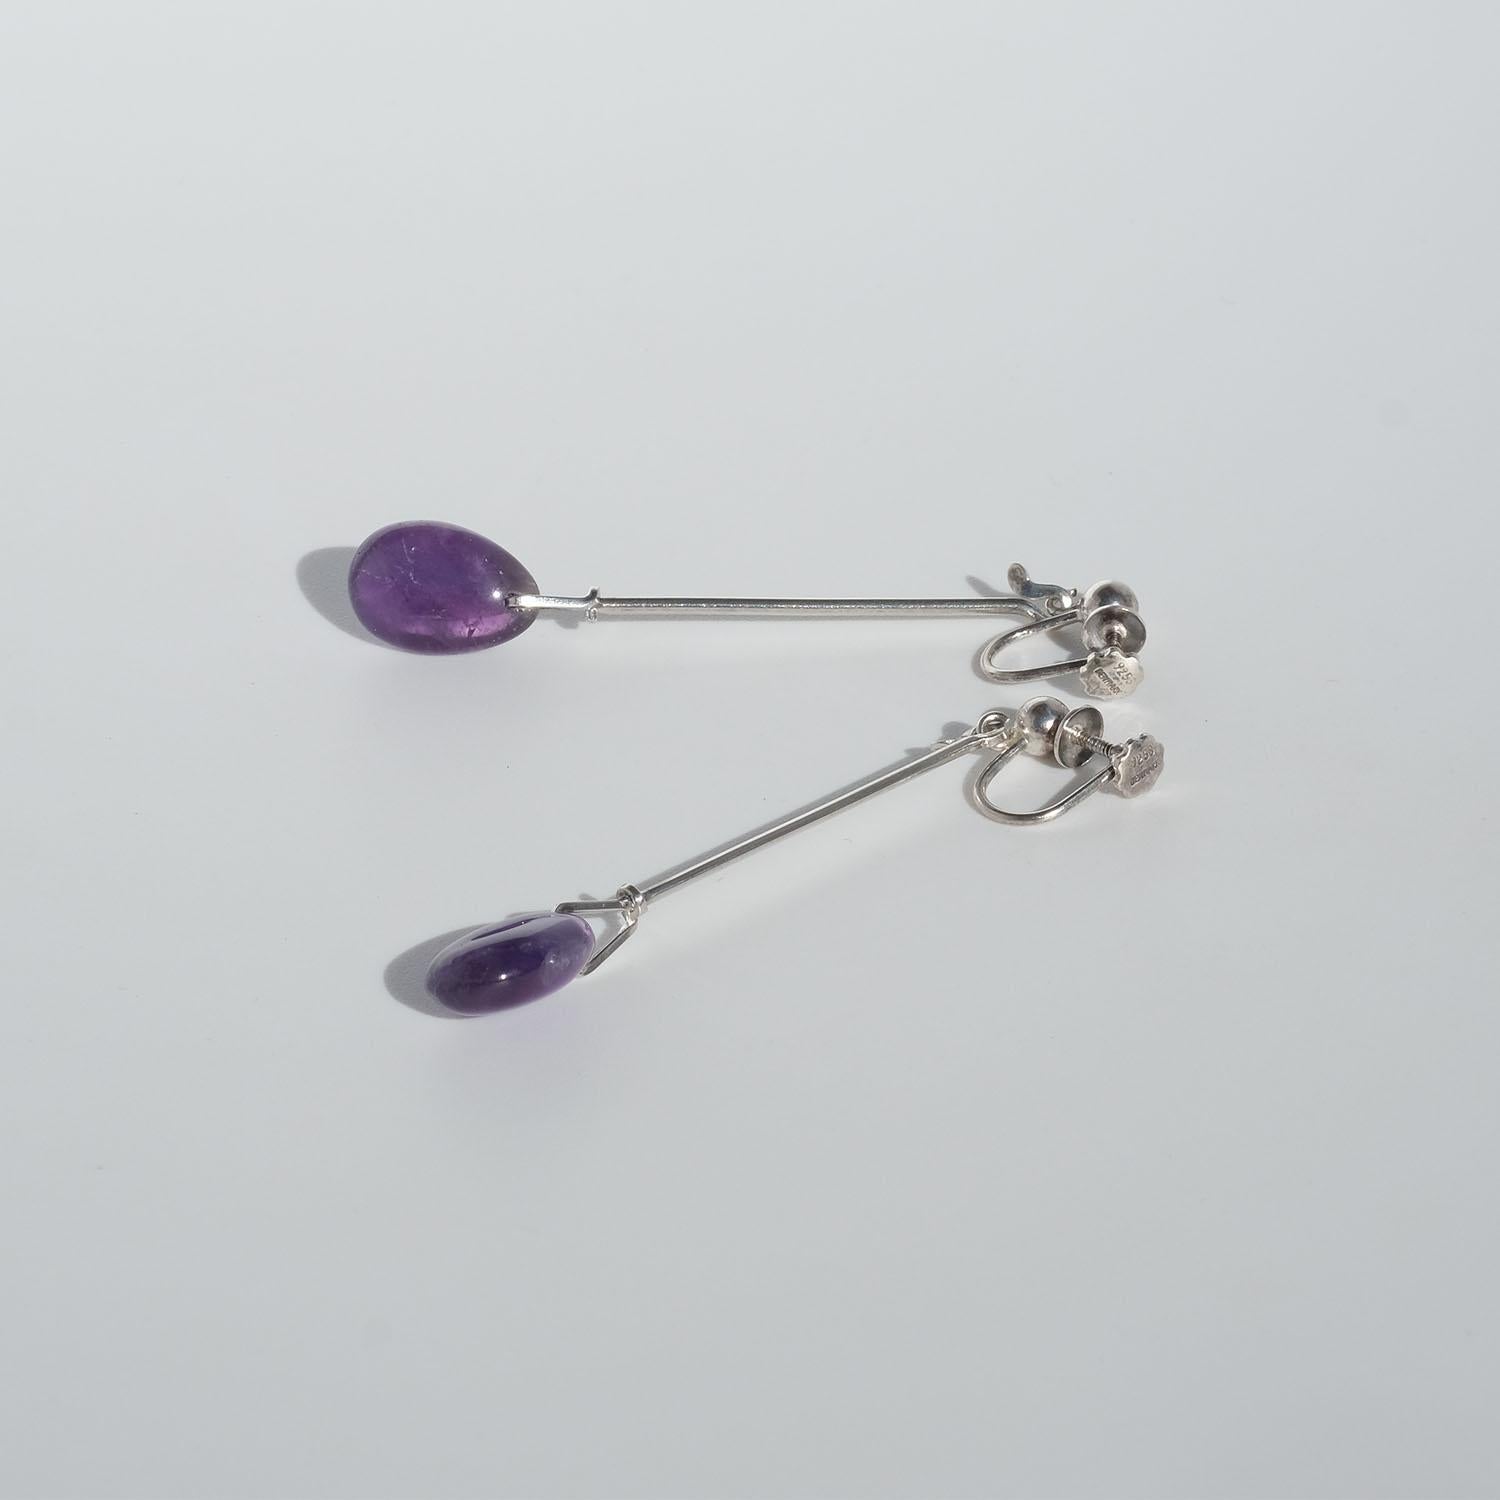 Oval Cut Vintage Silver and Amethyst Earrings, “Dew Drop”, by Vivianna Torun Bülow-Hübe For Sale